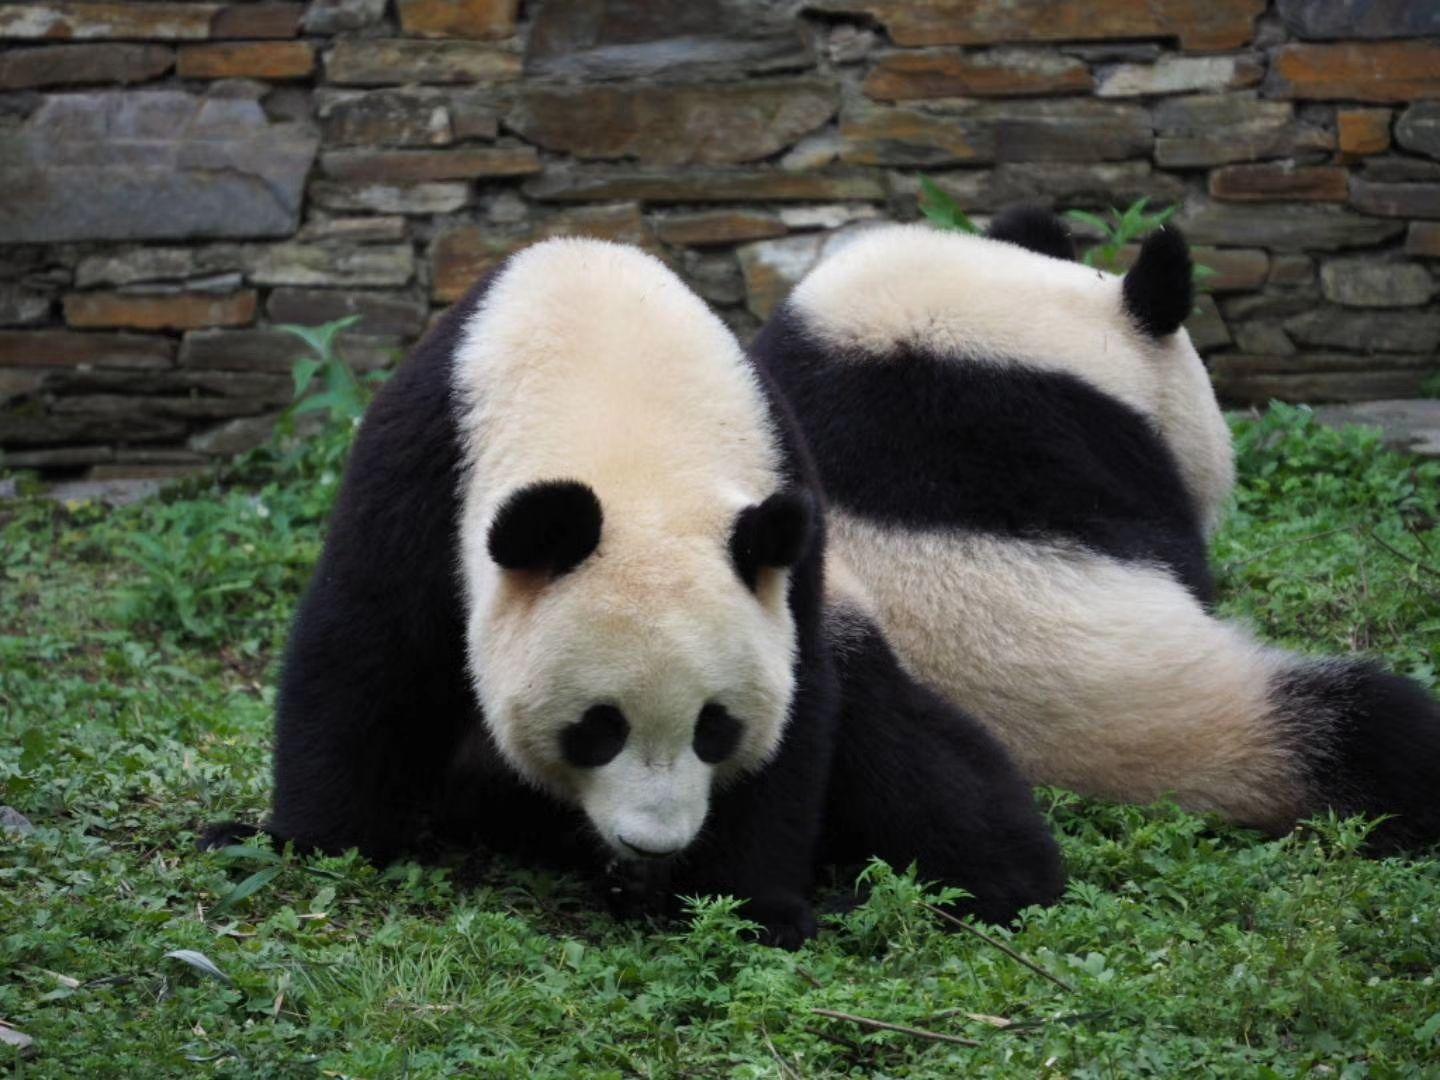 外国人真的很喜欢大熊猫吗?